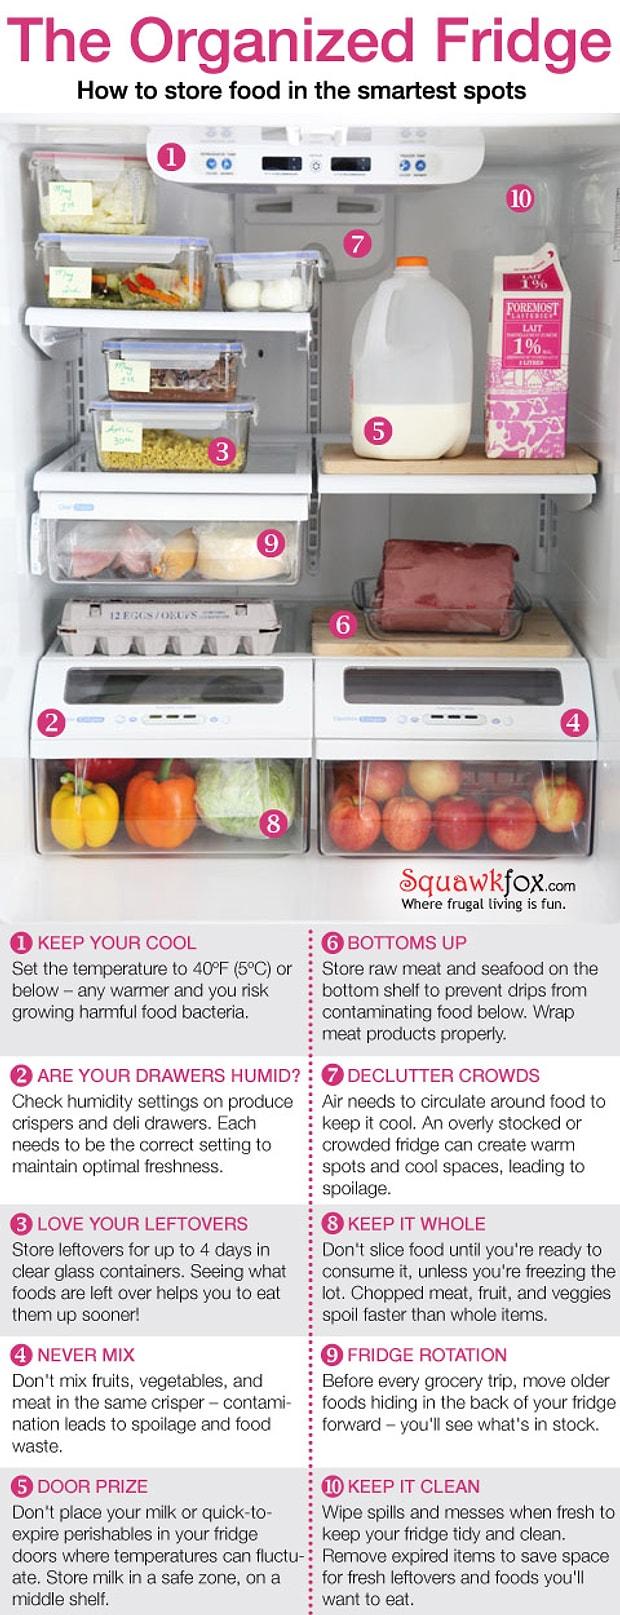 температура на верхней полке холодильника